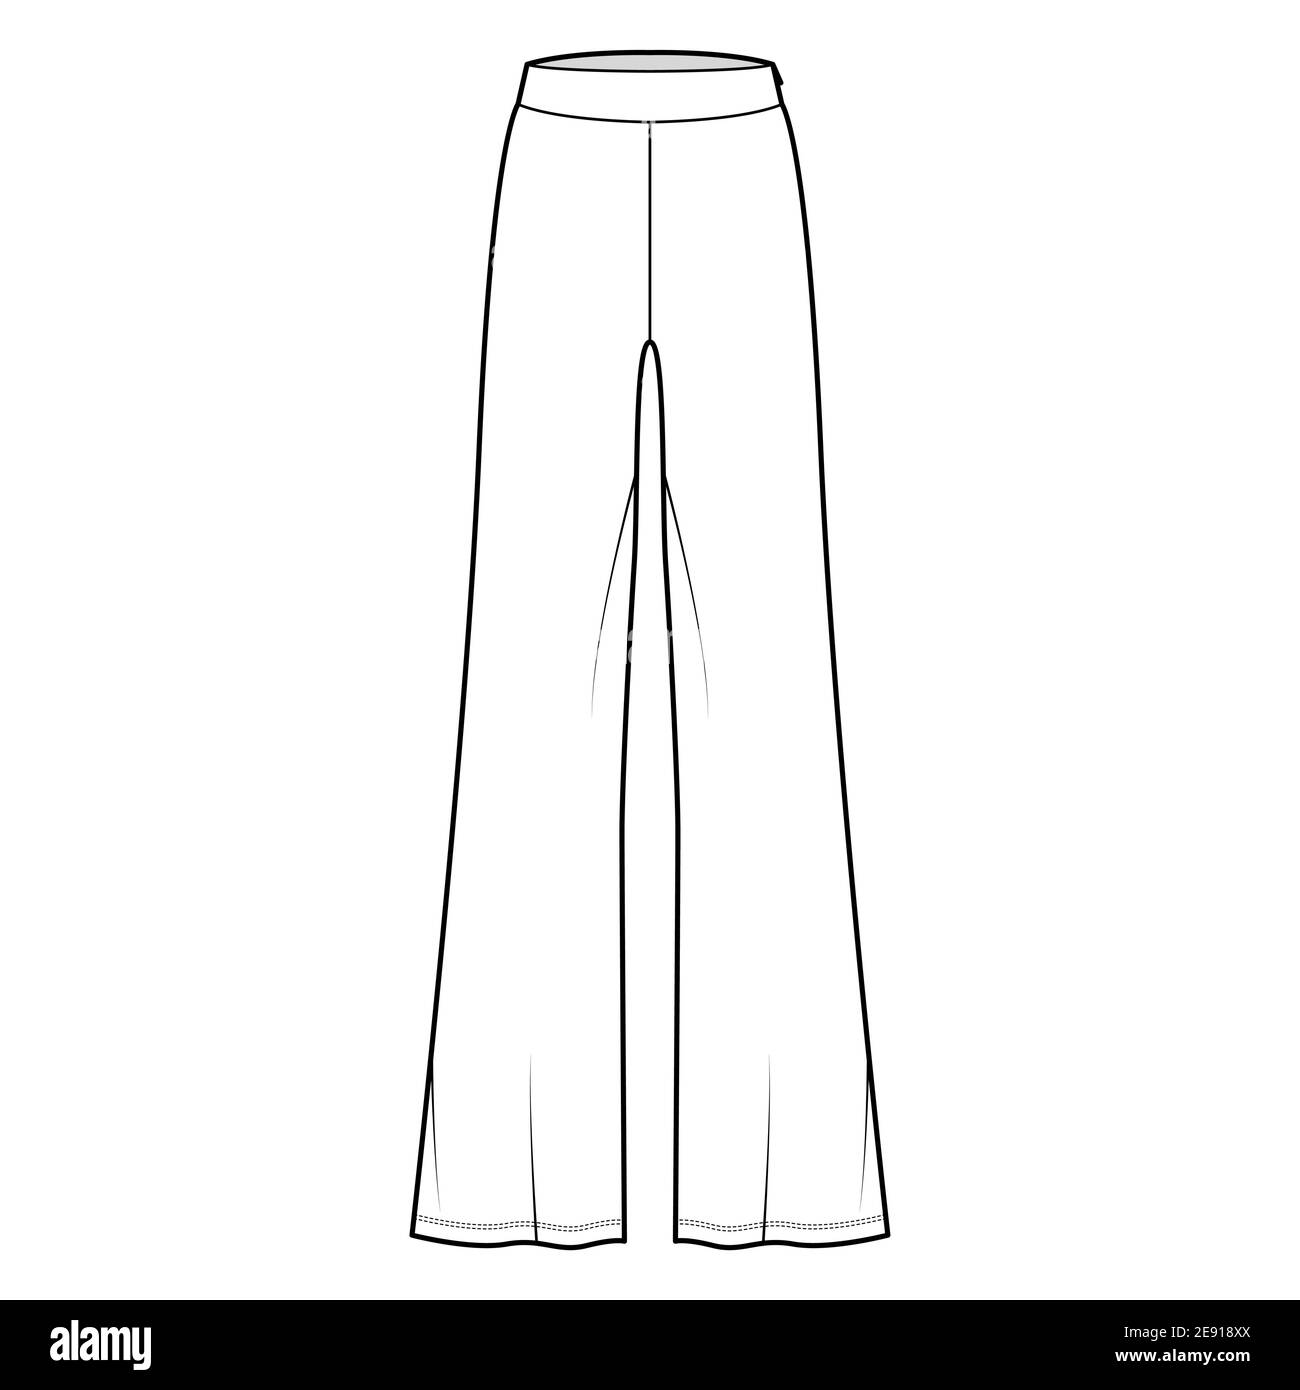 Vetor do Stock: Flared Leggings technical fashion illustration